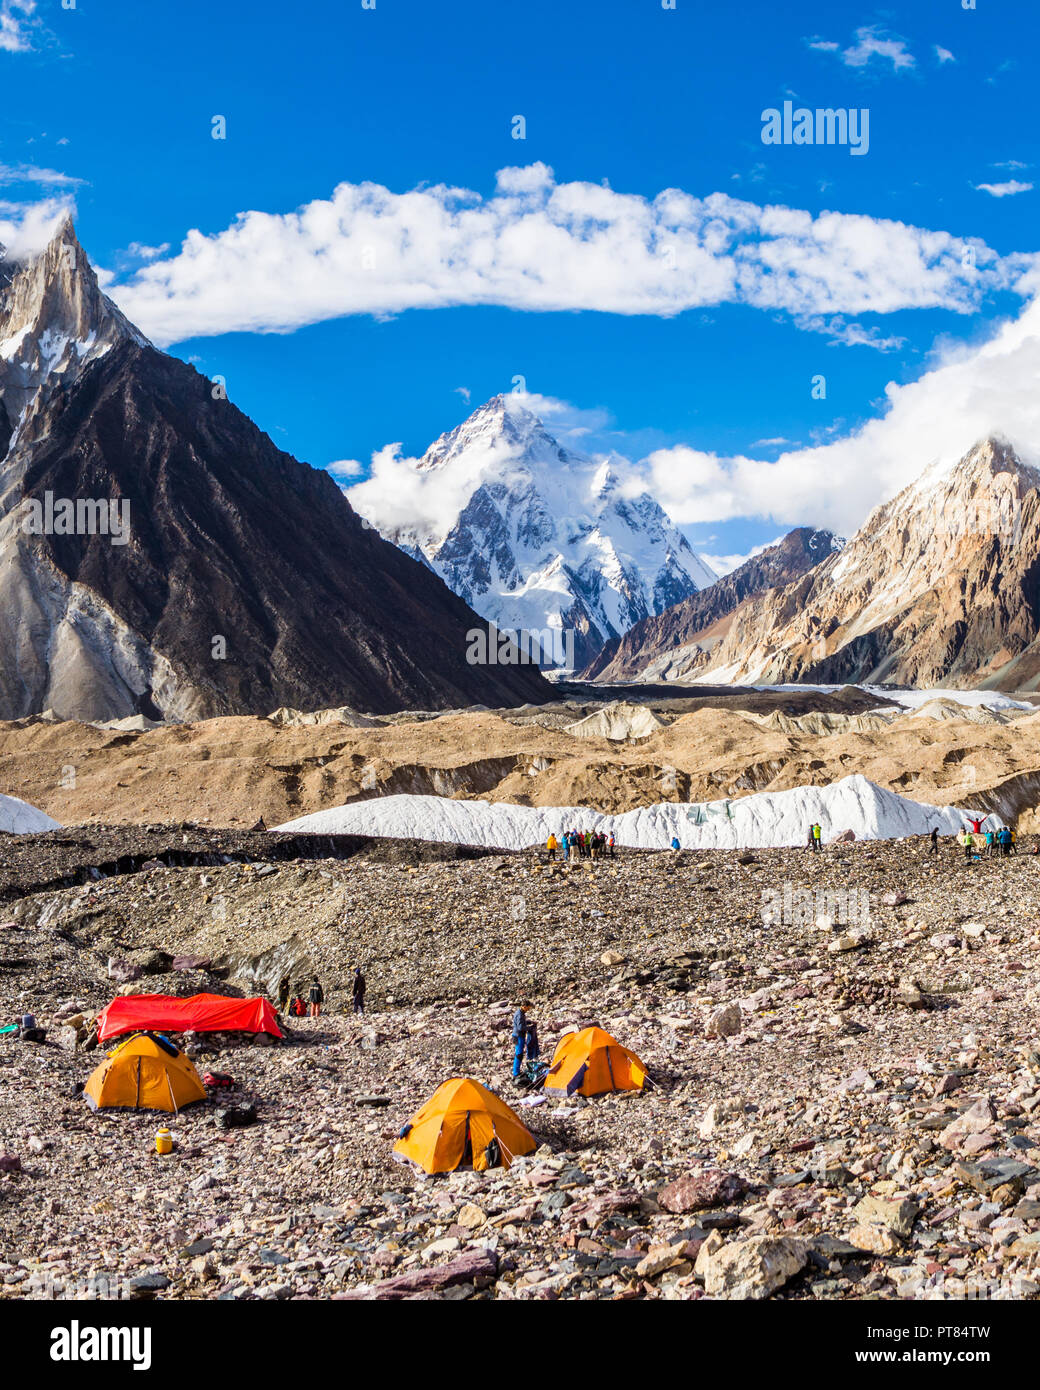 K2 de Concordia de montagne camping, Karakoram, Pakistan Banque D'Images